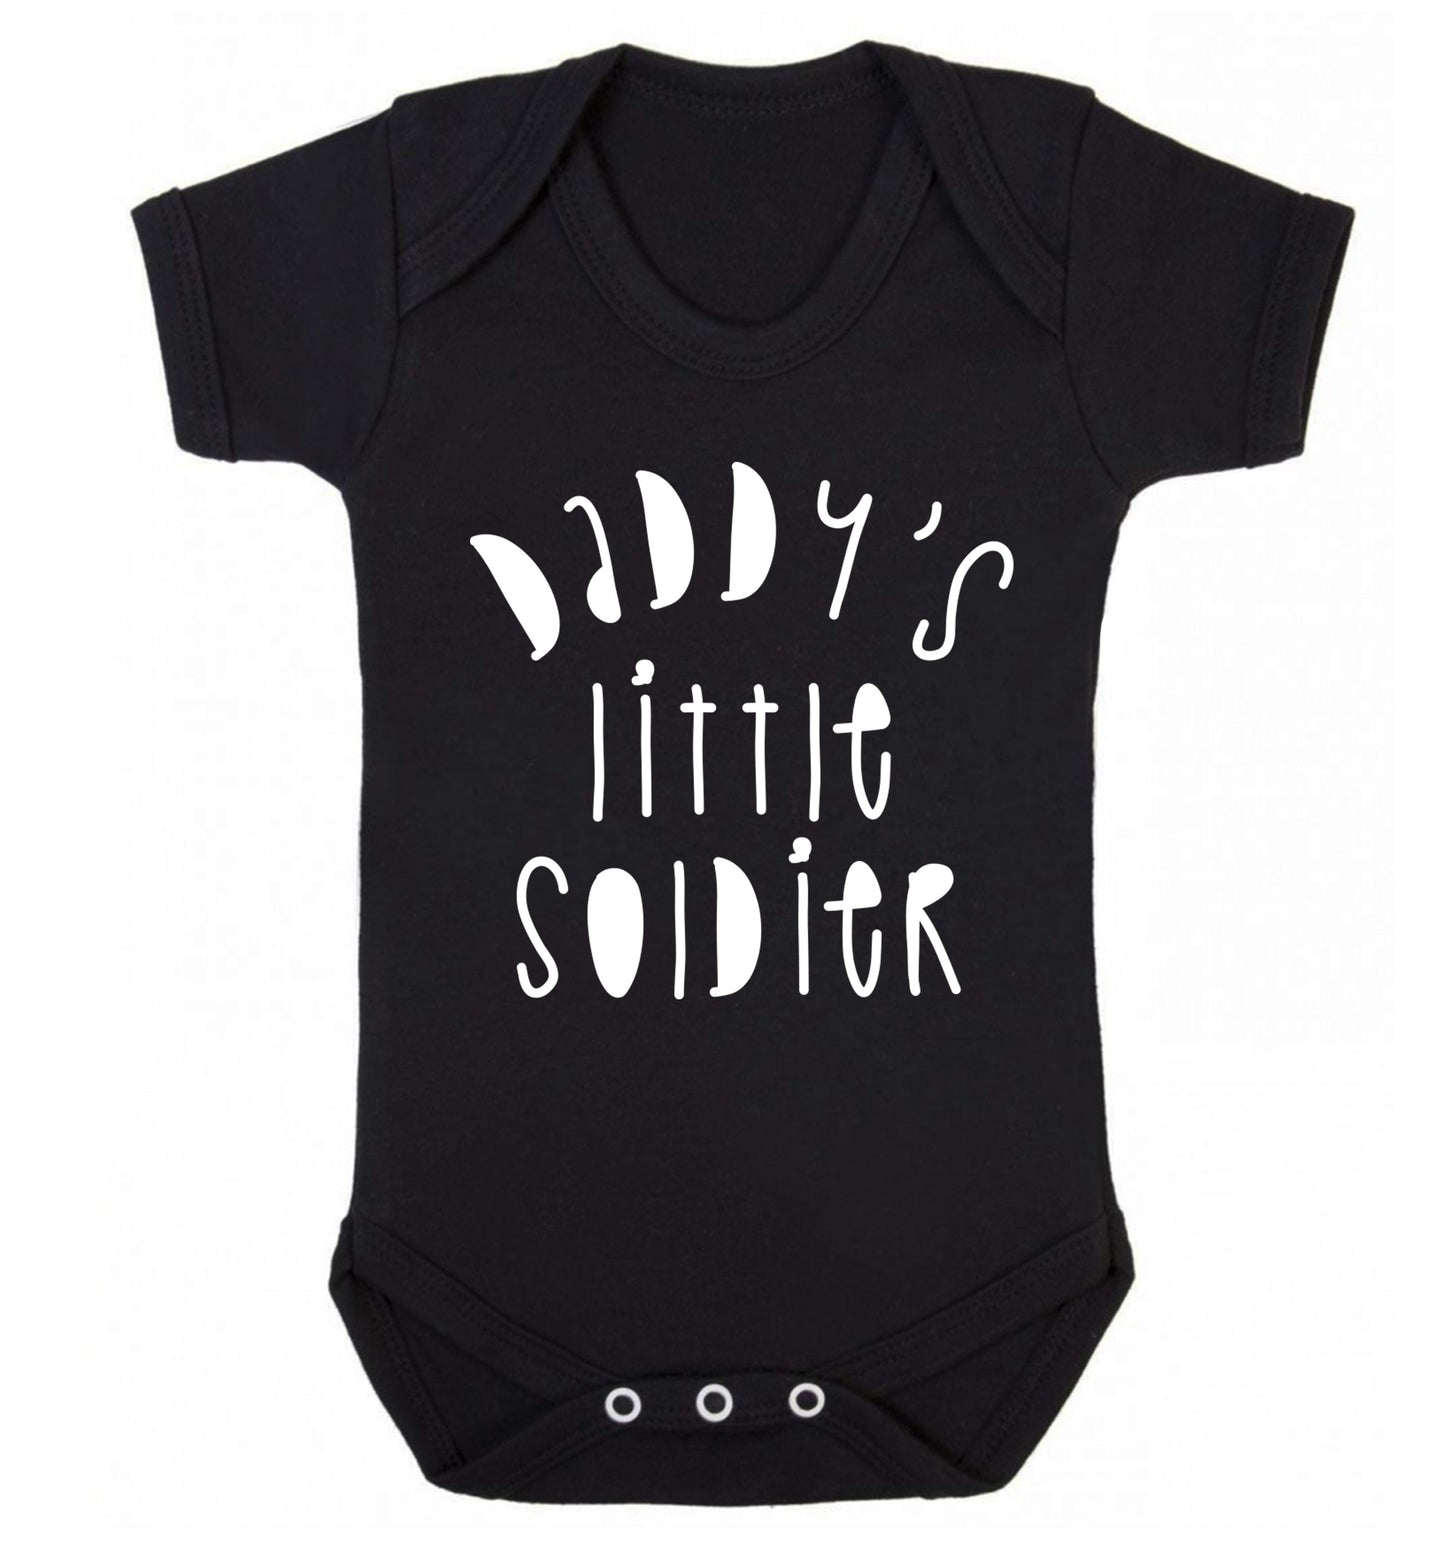 Daddy's little soldier Baby Vest black 18-24 months